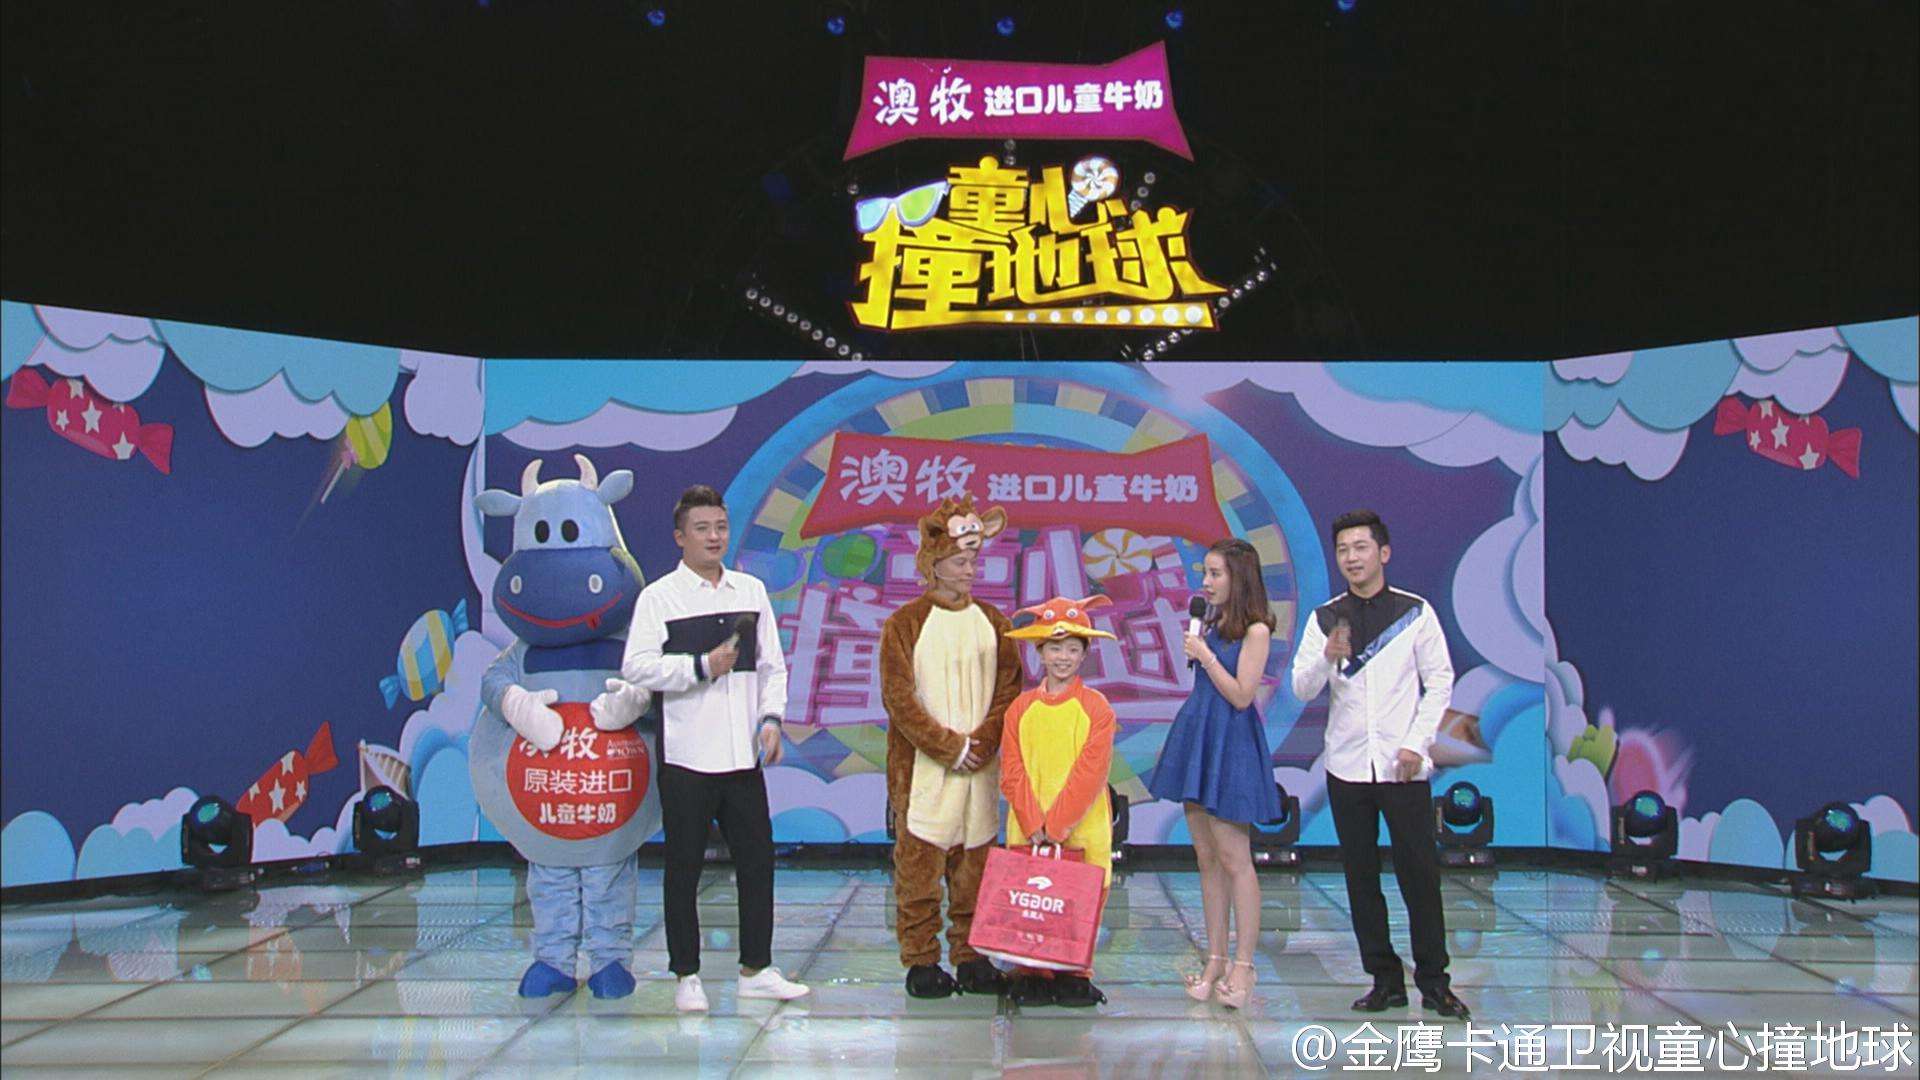 2017年6月13日电视台收视率排行榜,湖南卫视第一浙江卫视第六